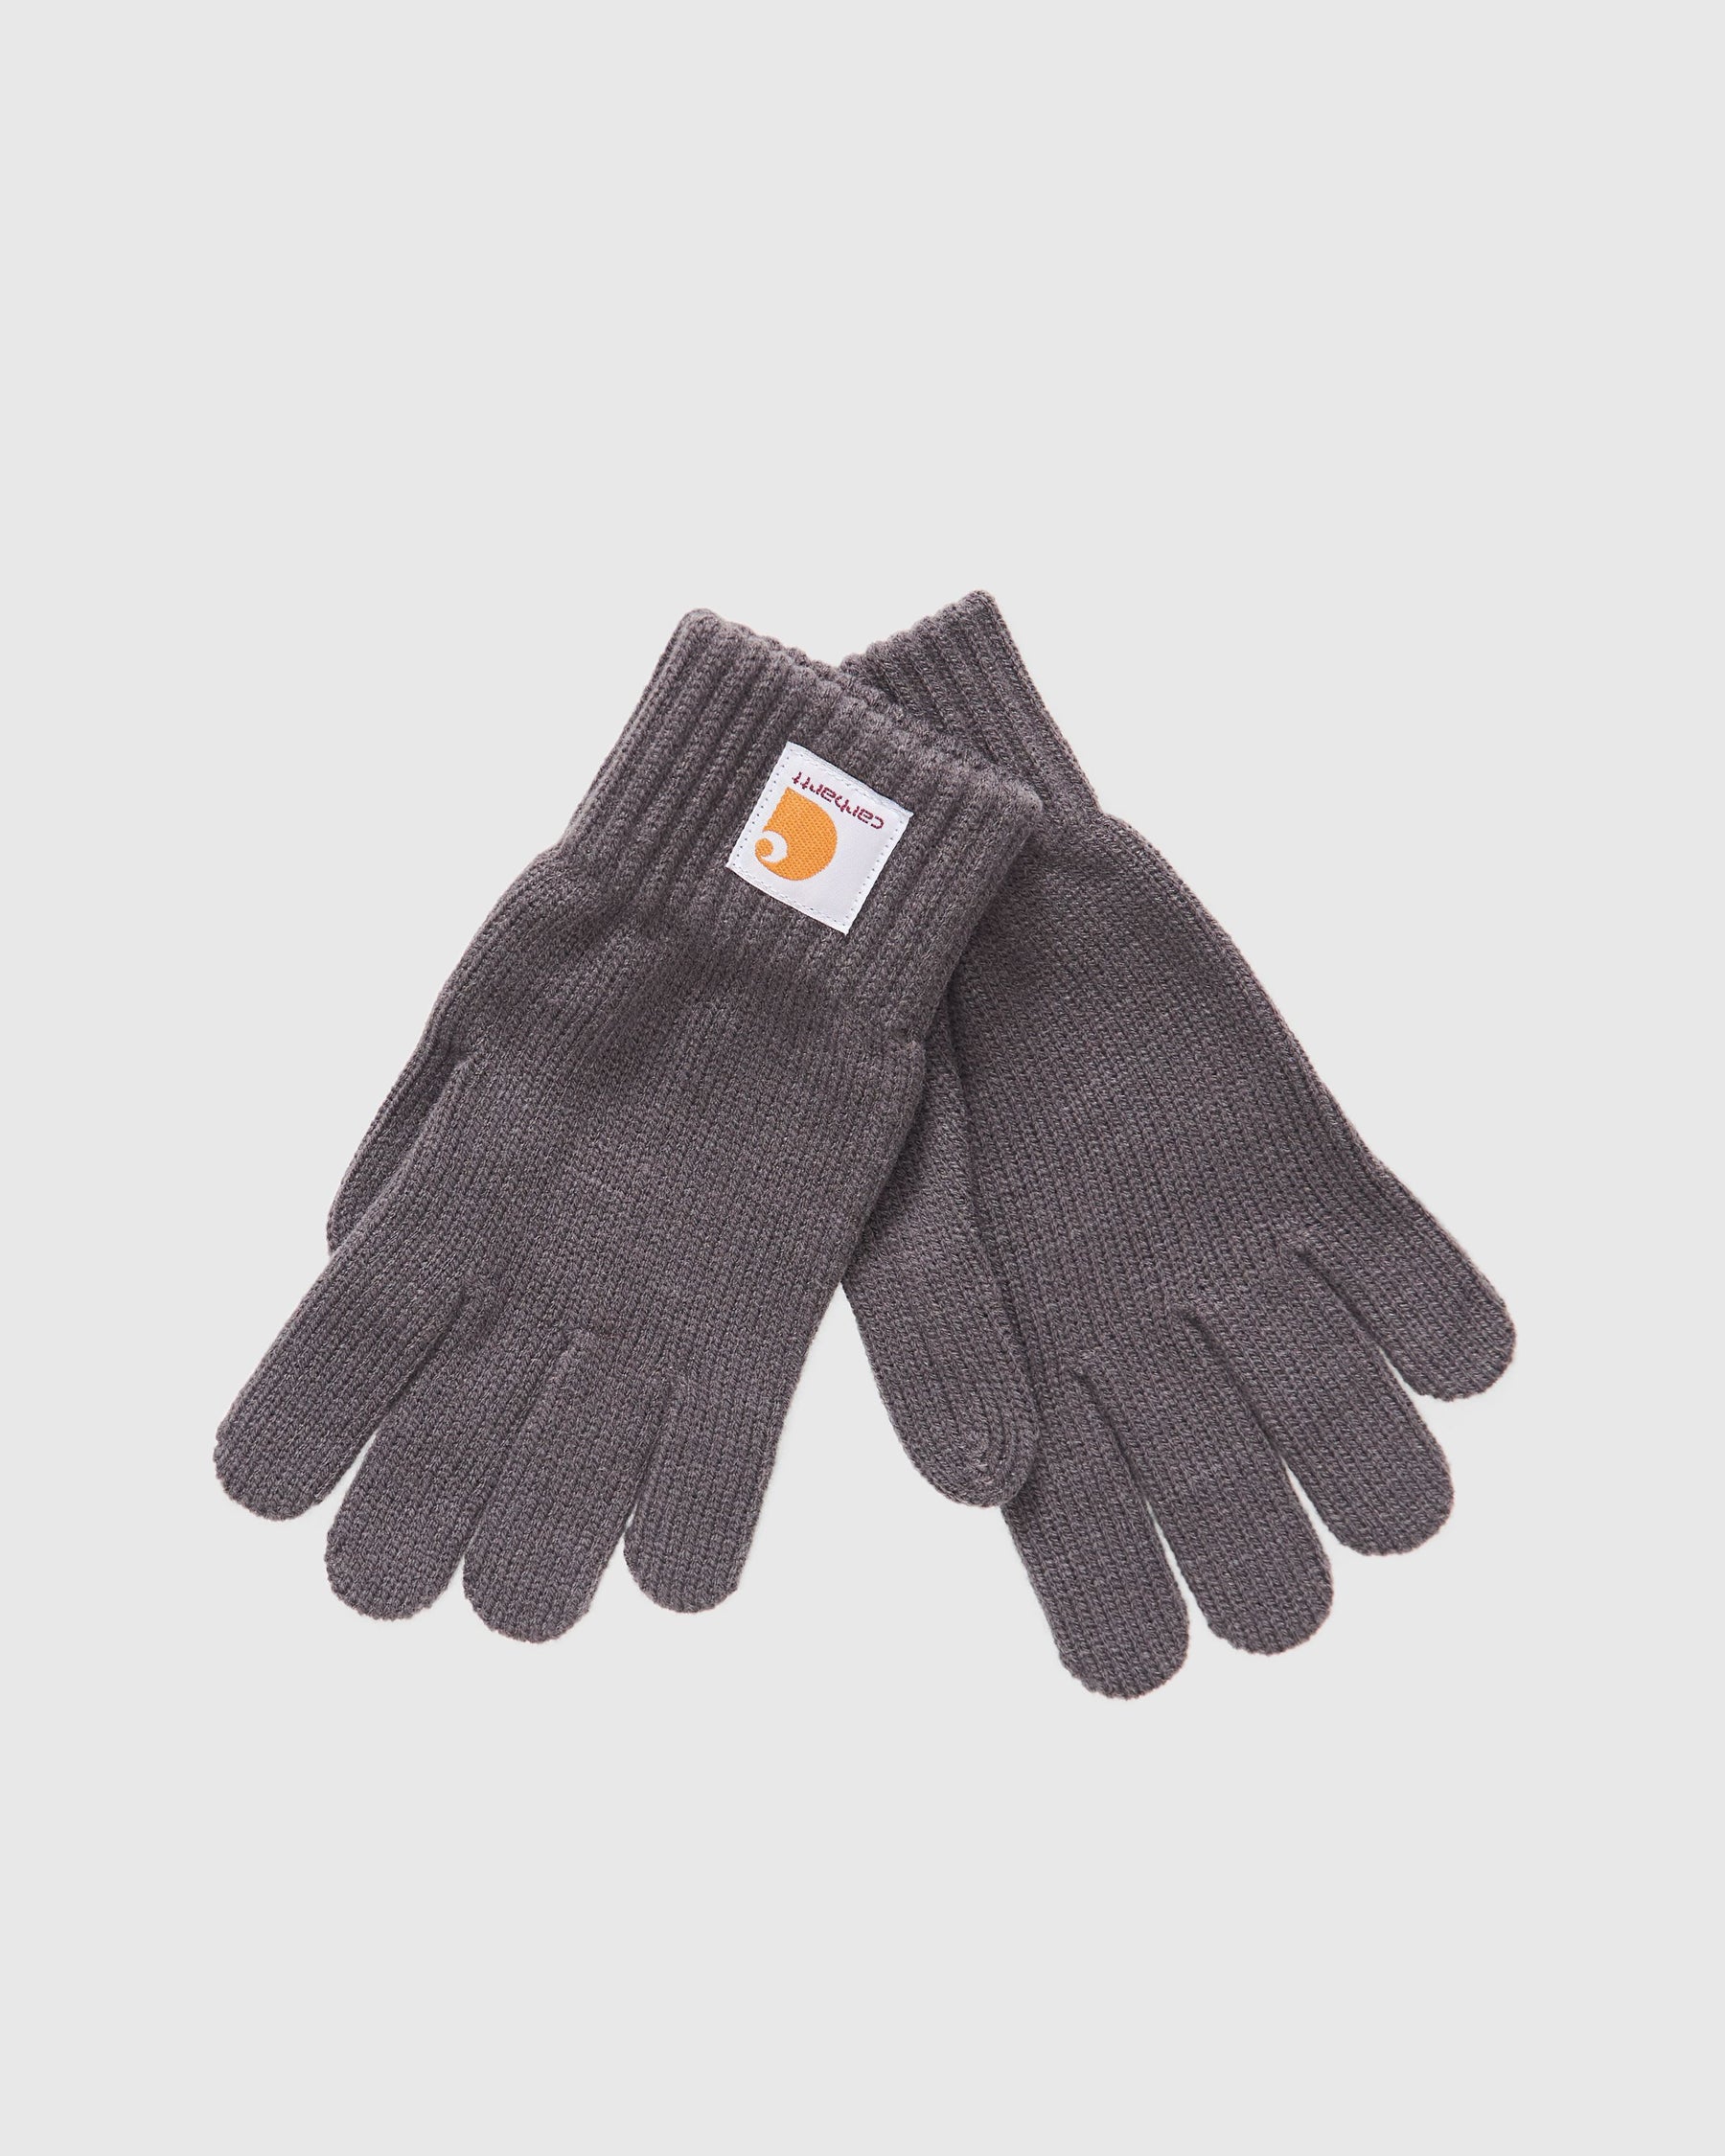 Watch Gloves in Blacksmith